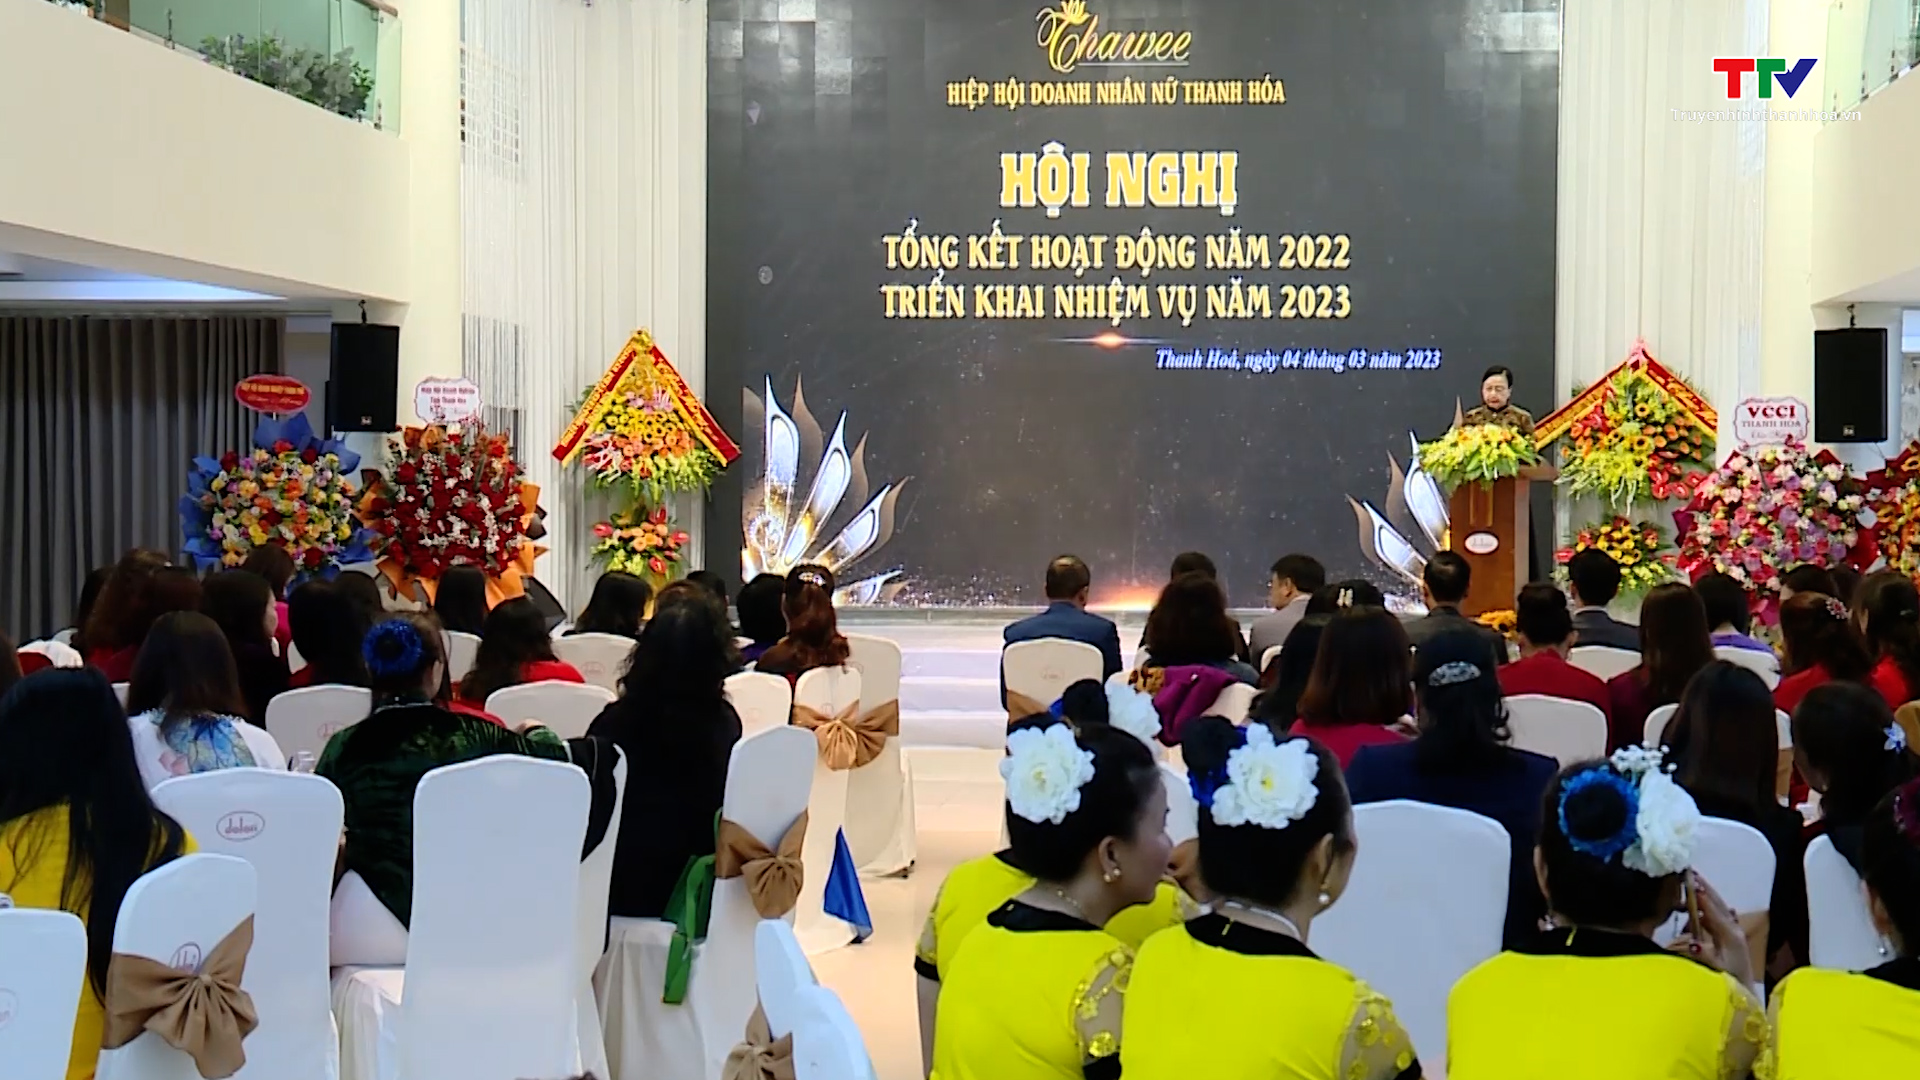 Hiệp hội Doanh nhân nữ Thanh Hoá, ngôi nhà chung của các doanh nghiệp do nữ làm chủ  - Ảnh 4.